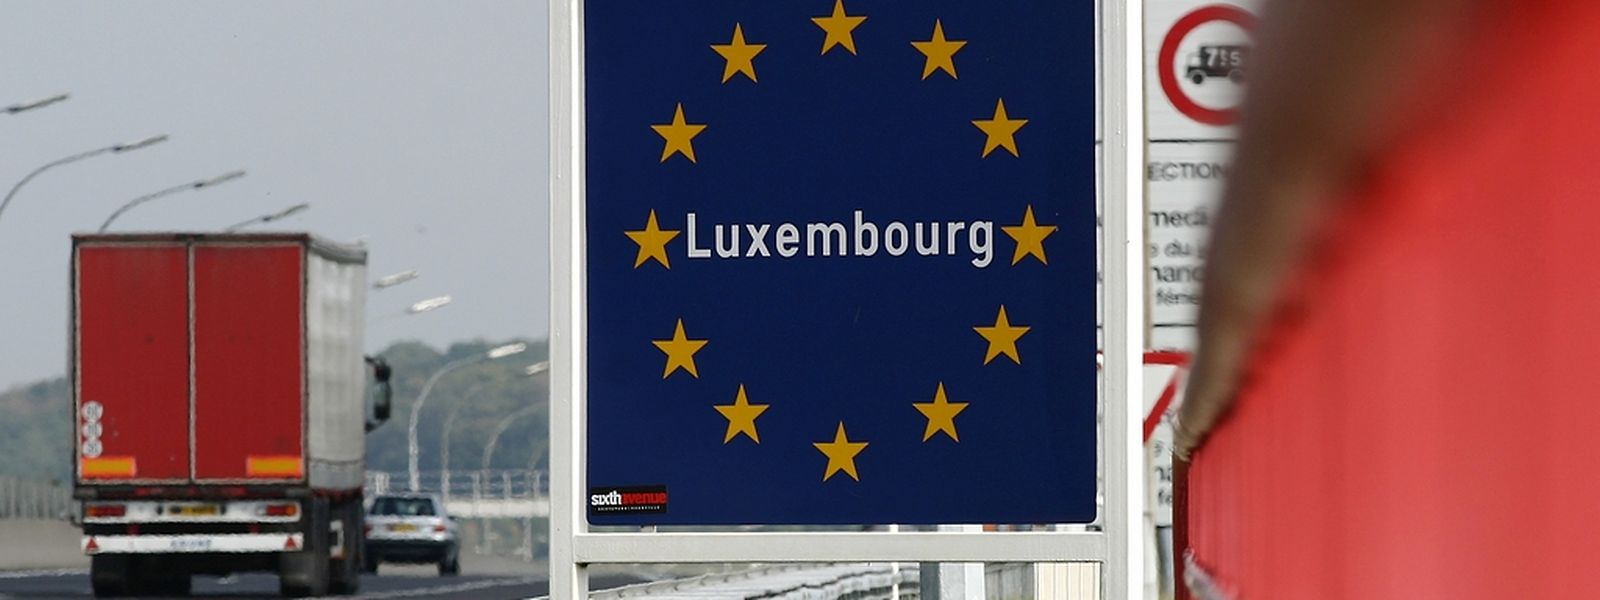 Für Luxemburg erwartet die Organisation ein Wachstum von 2,7 Prozent in diesem Jahr und 2,9 Prozent für 2016. (Foto: Guy Wolff)